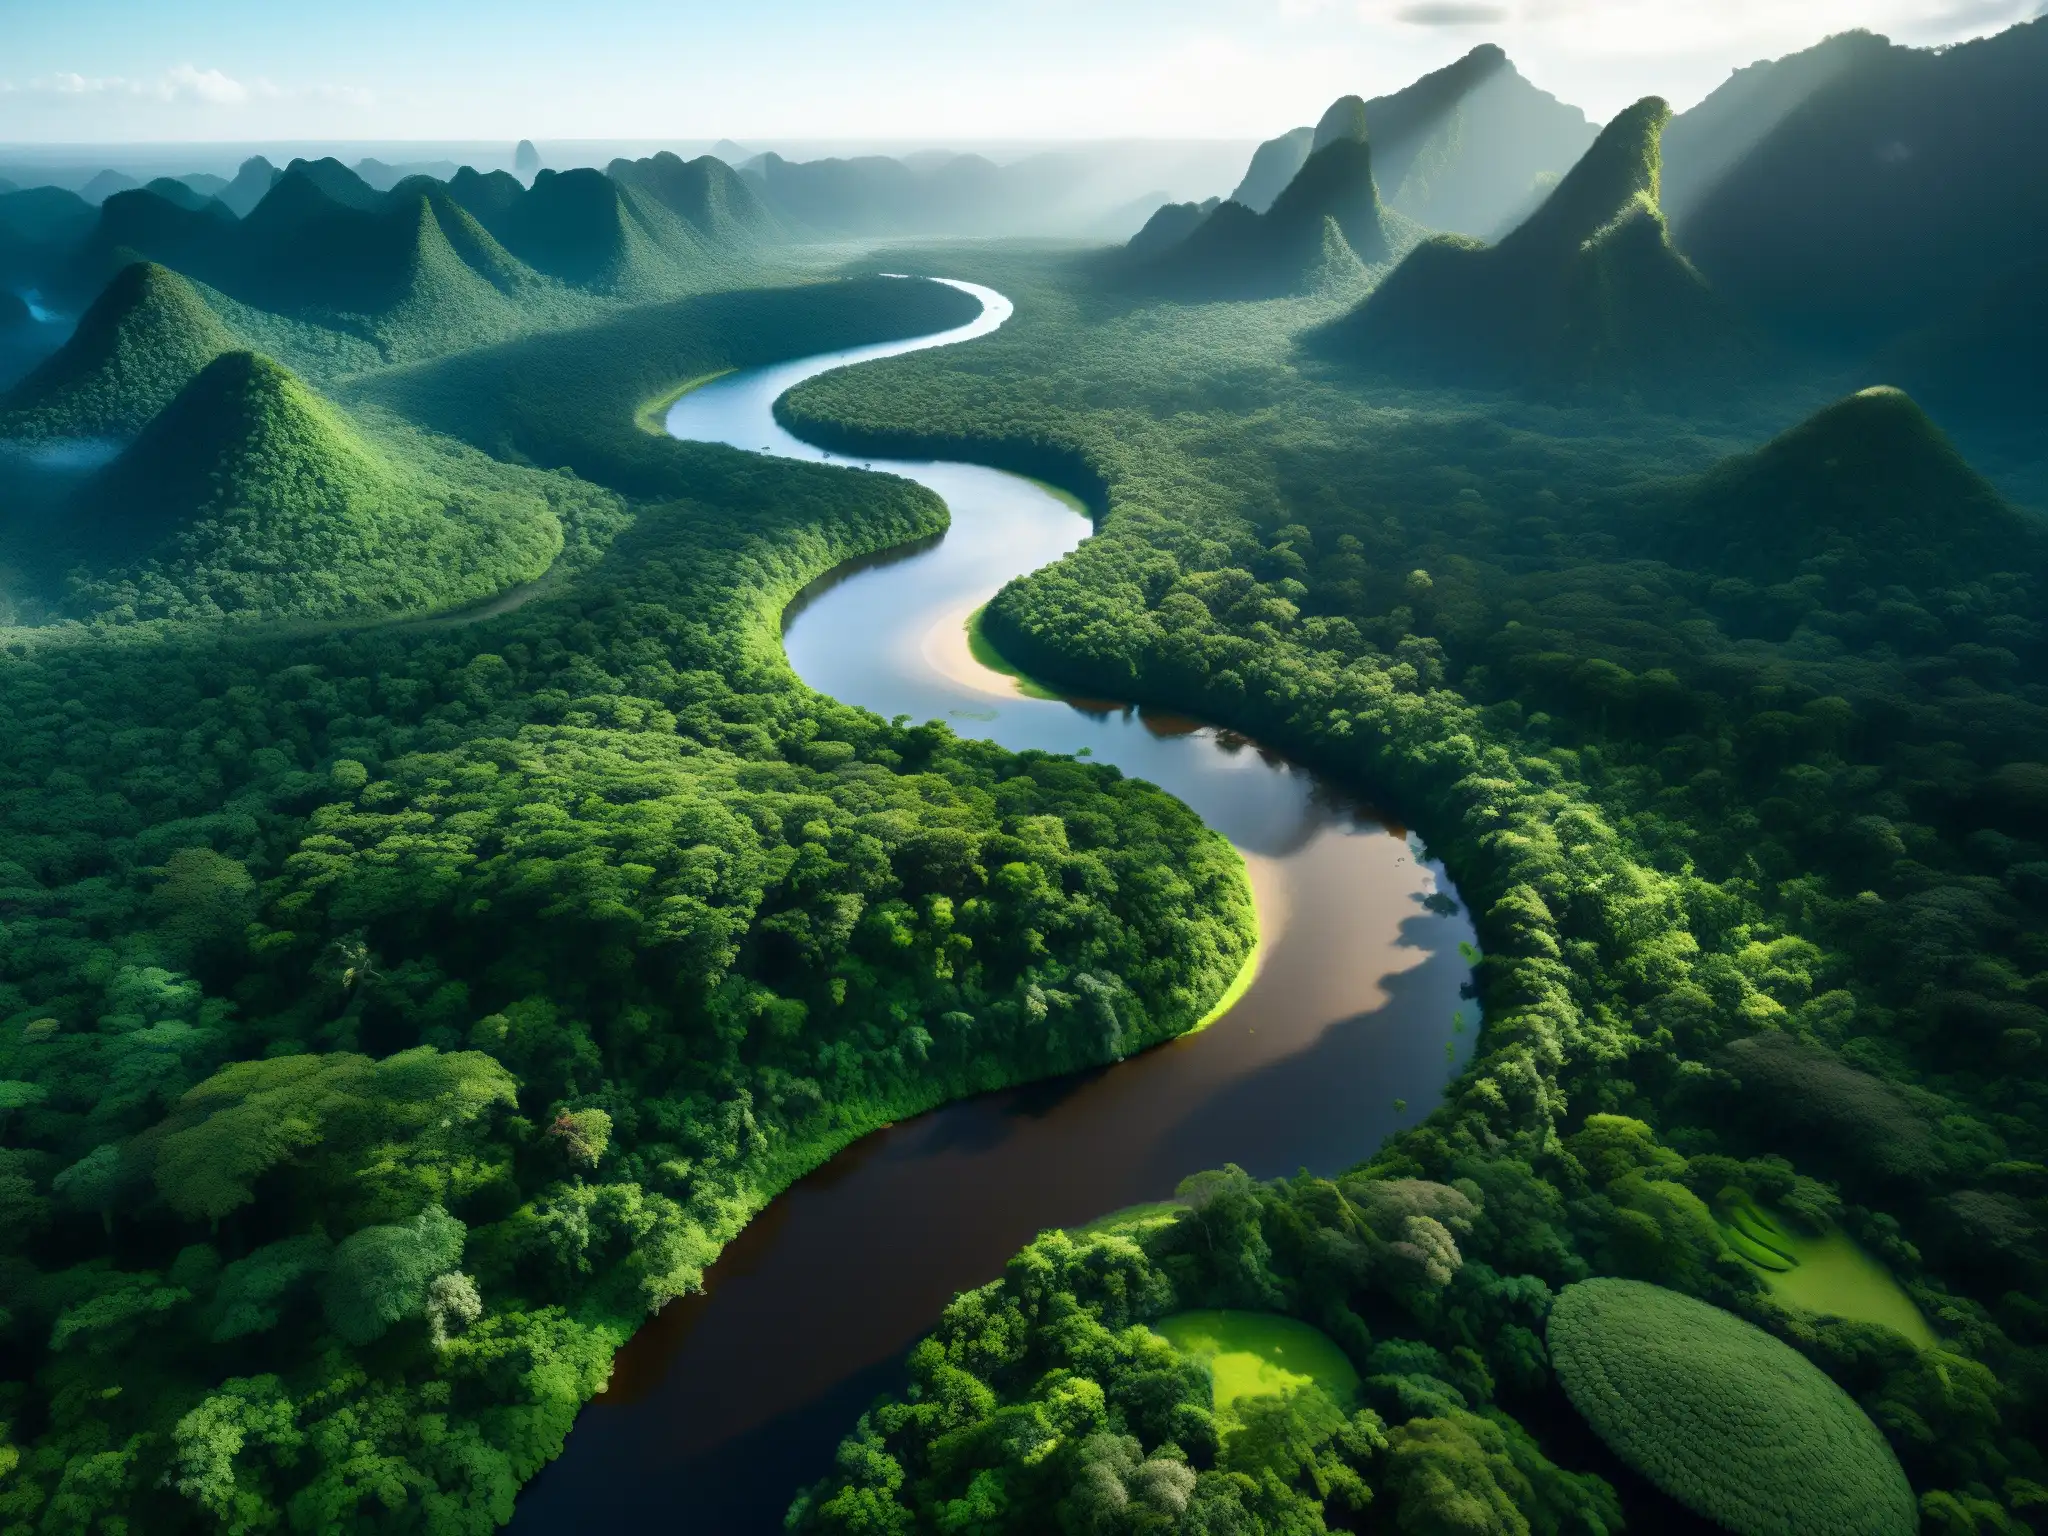 Imagen deslumbrante de la selva amazónica con un río serpenteante, evocando la majestuosidad y misterio de la Yacumama, serpiente gigante Amazonas